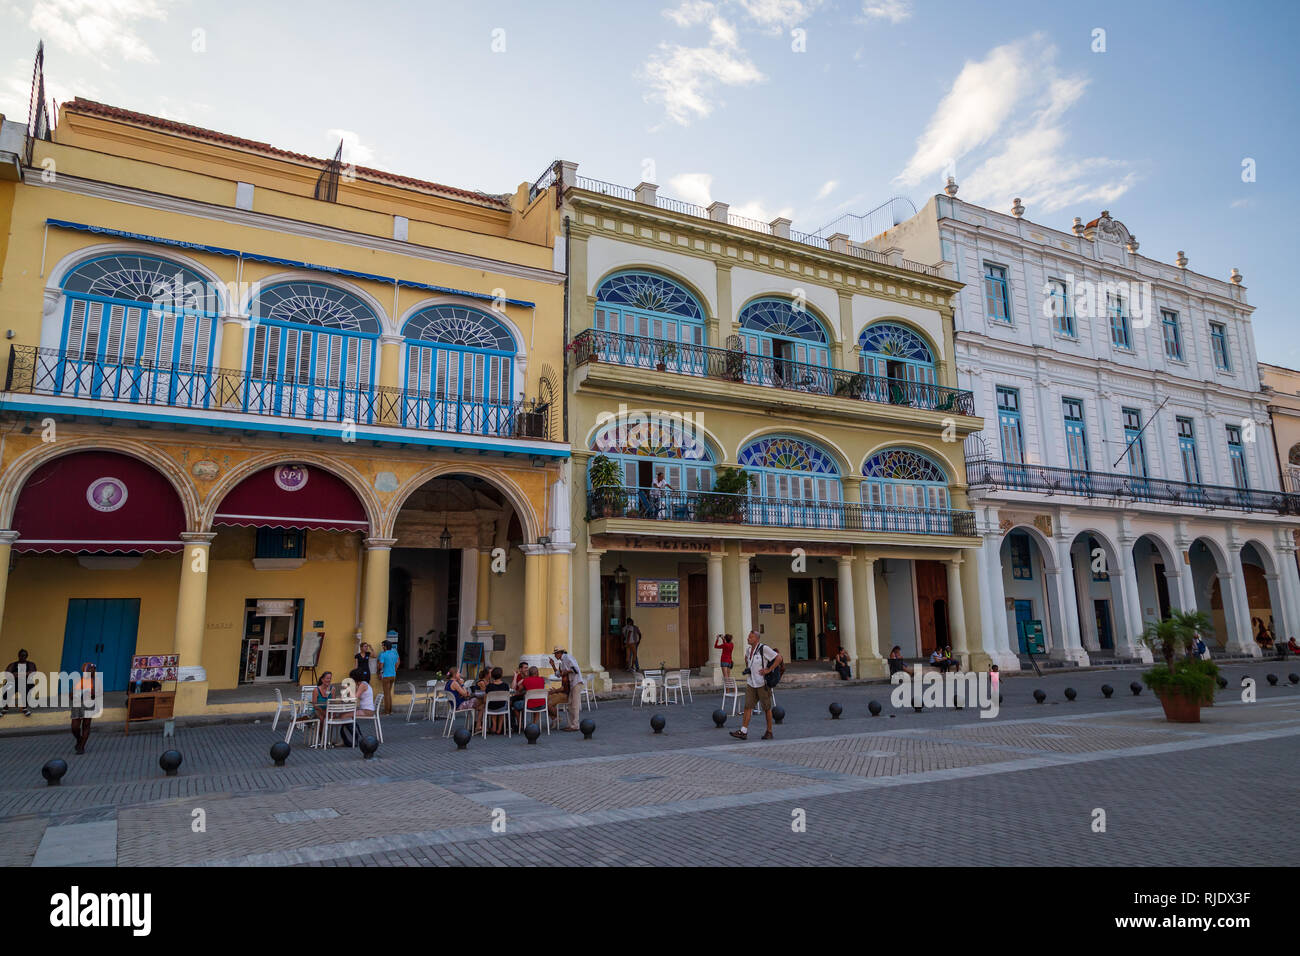 Un mur à l'autre des bâtiments de style colonial espagnol avec des gens assis à l'extérieur d'un café sur la place de la vieille ville de Plaza Vieja à La Havane Cuba Banque D'Images